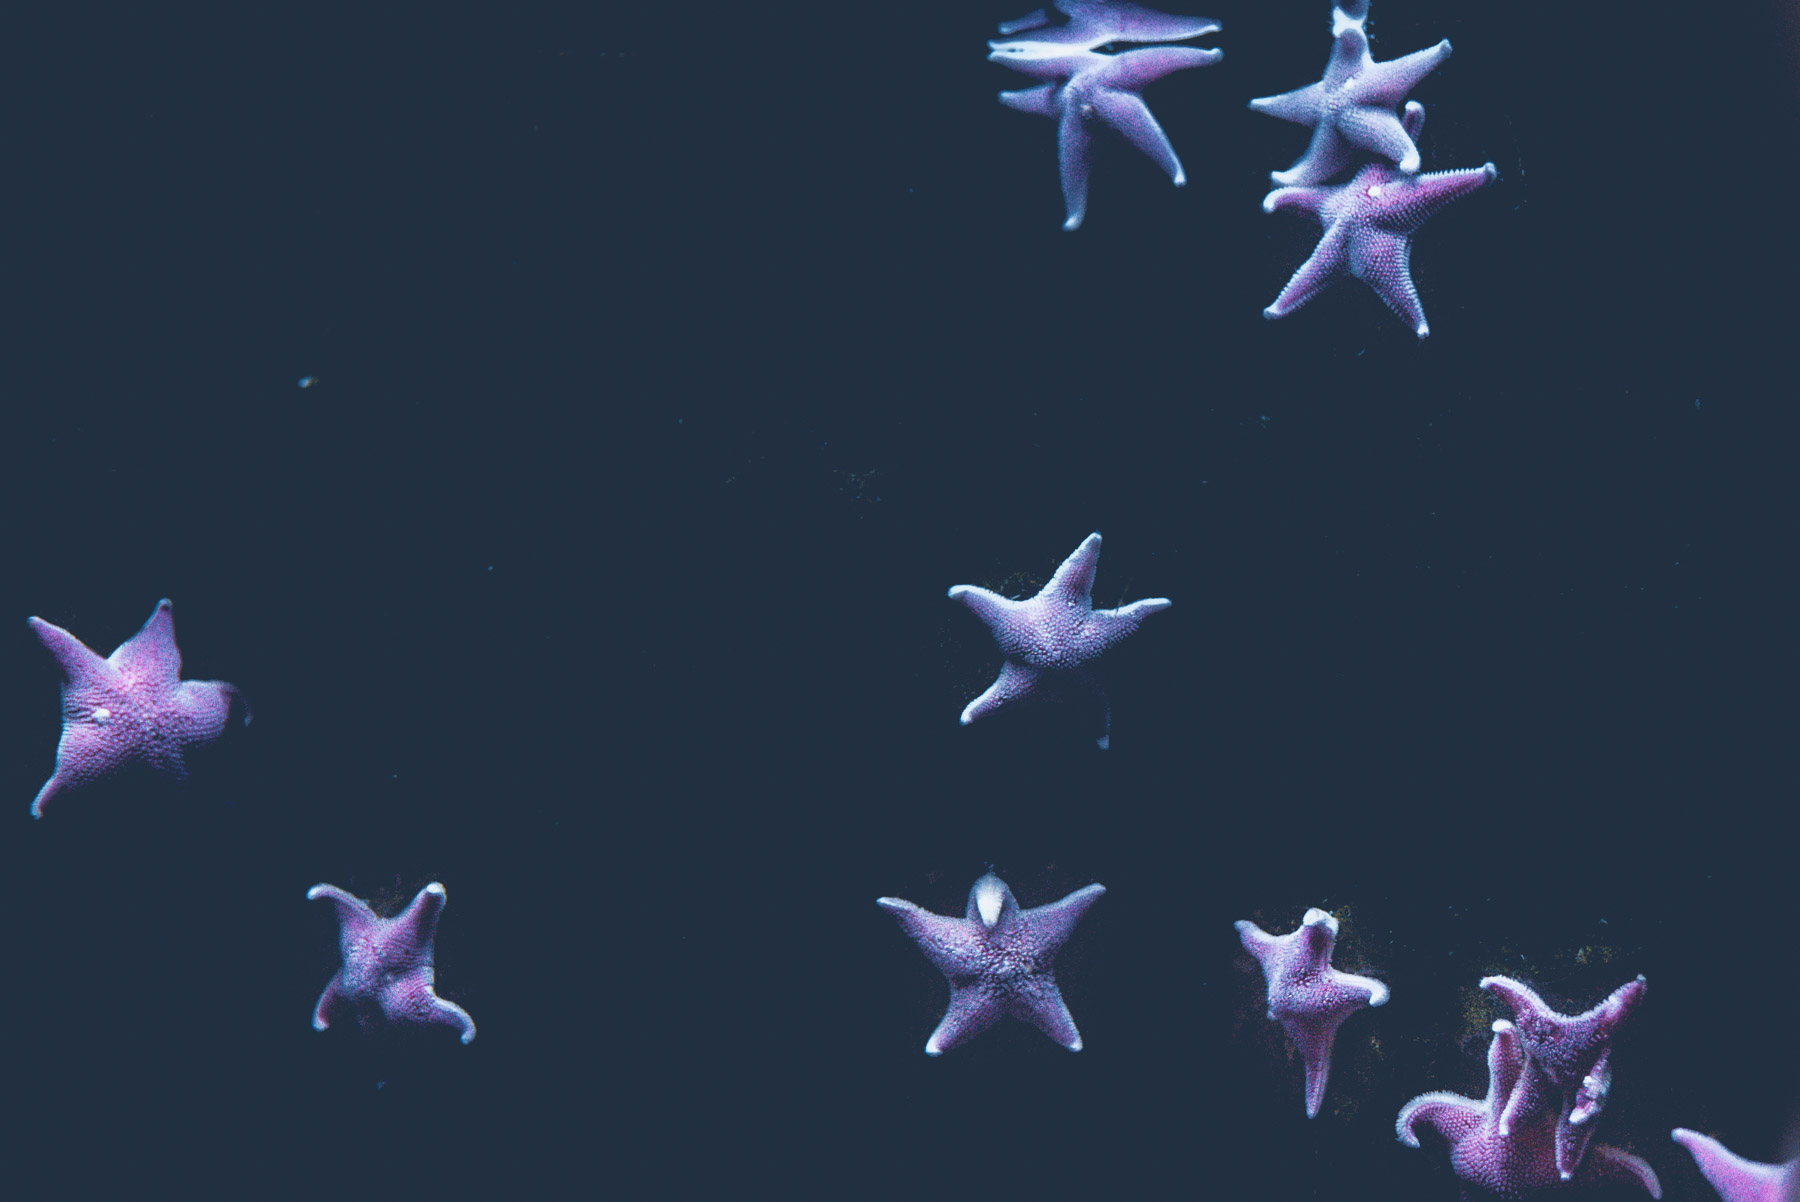 Starfishes of the Genoa aquarium